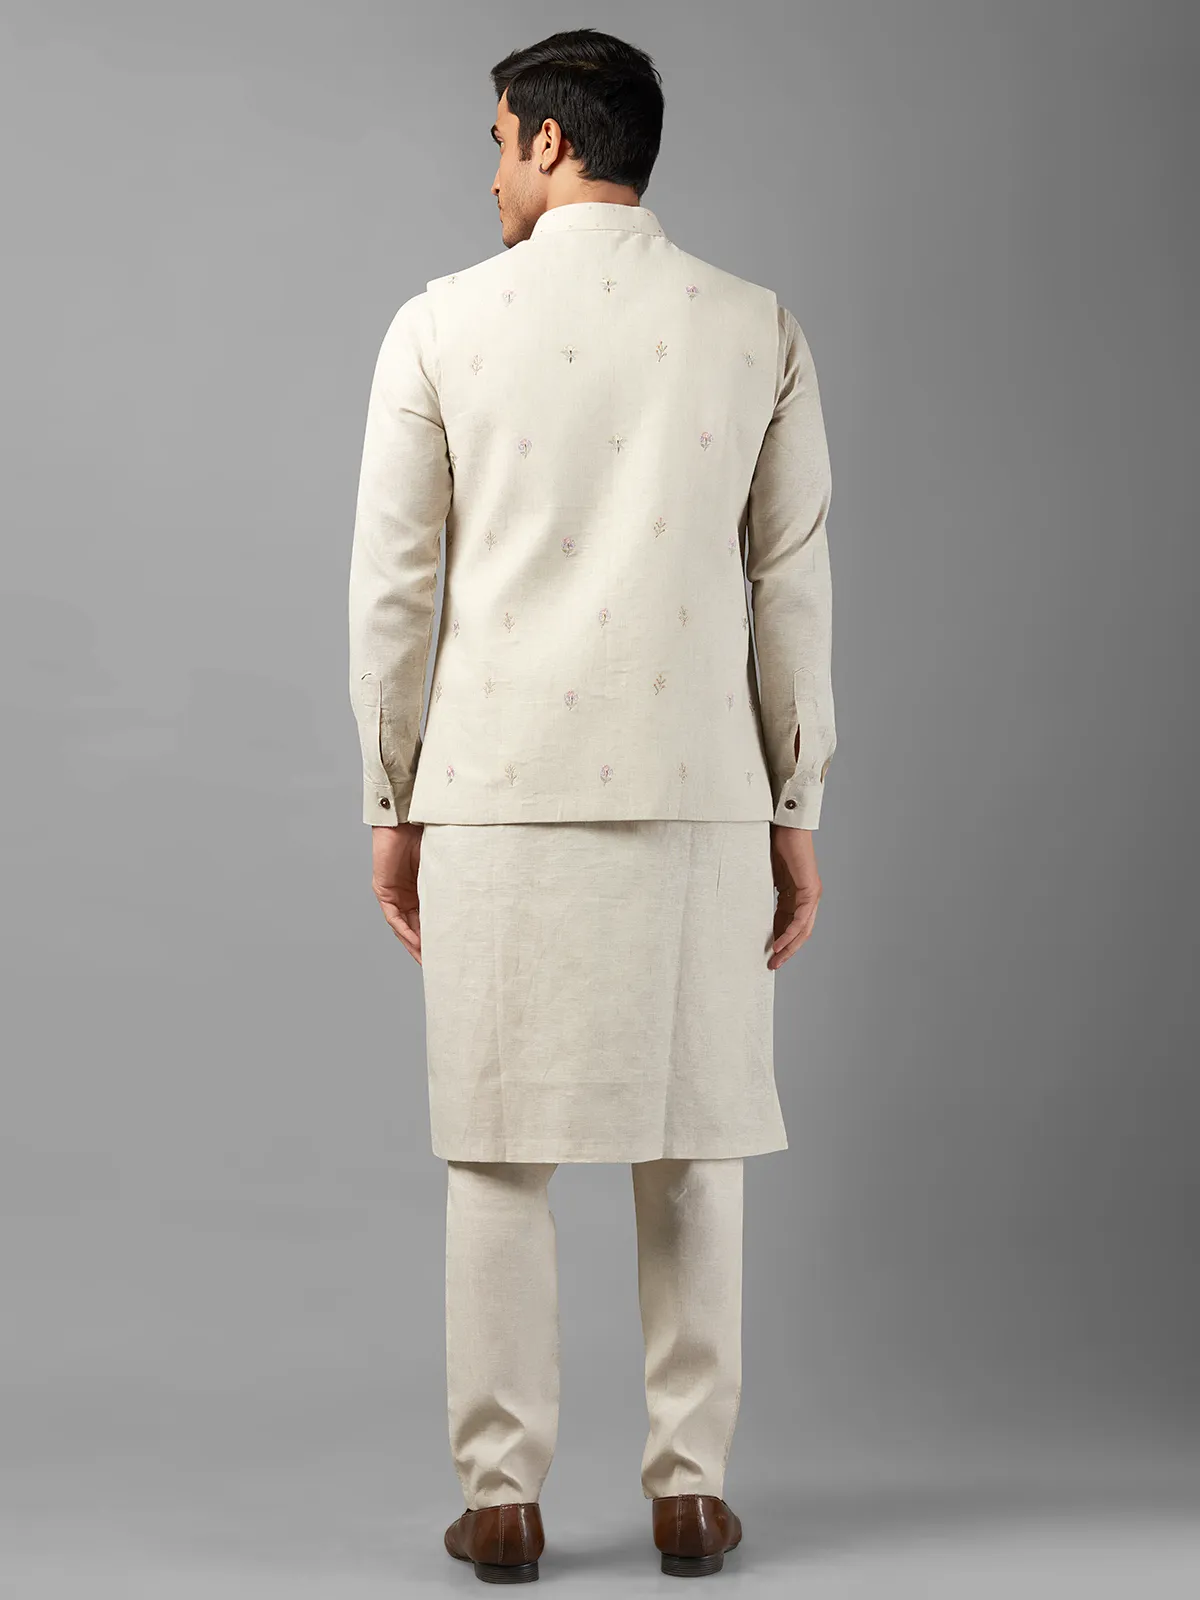 Stunning off-white linen waistcoat set